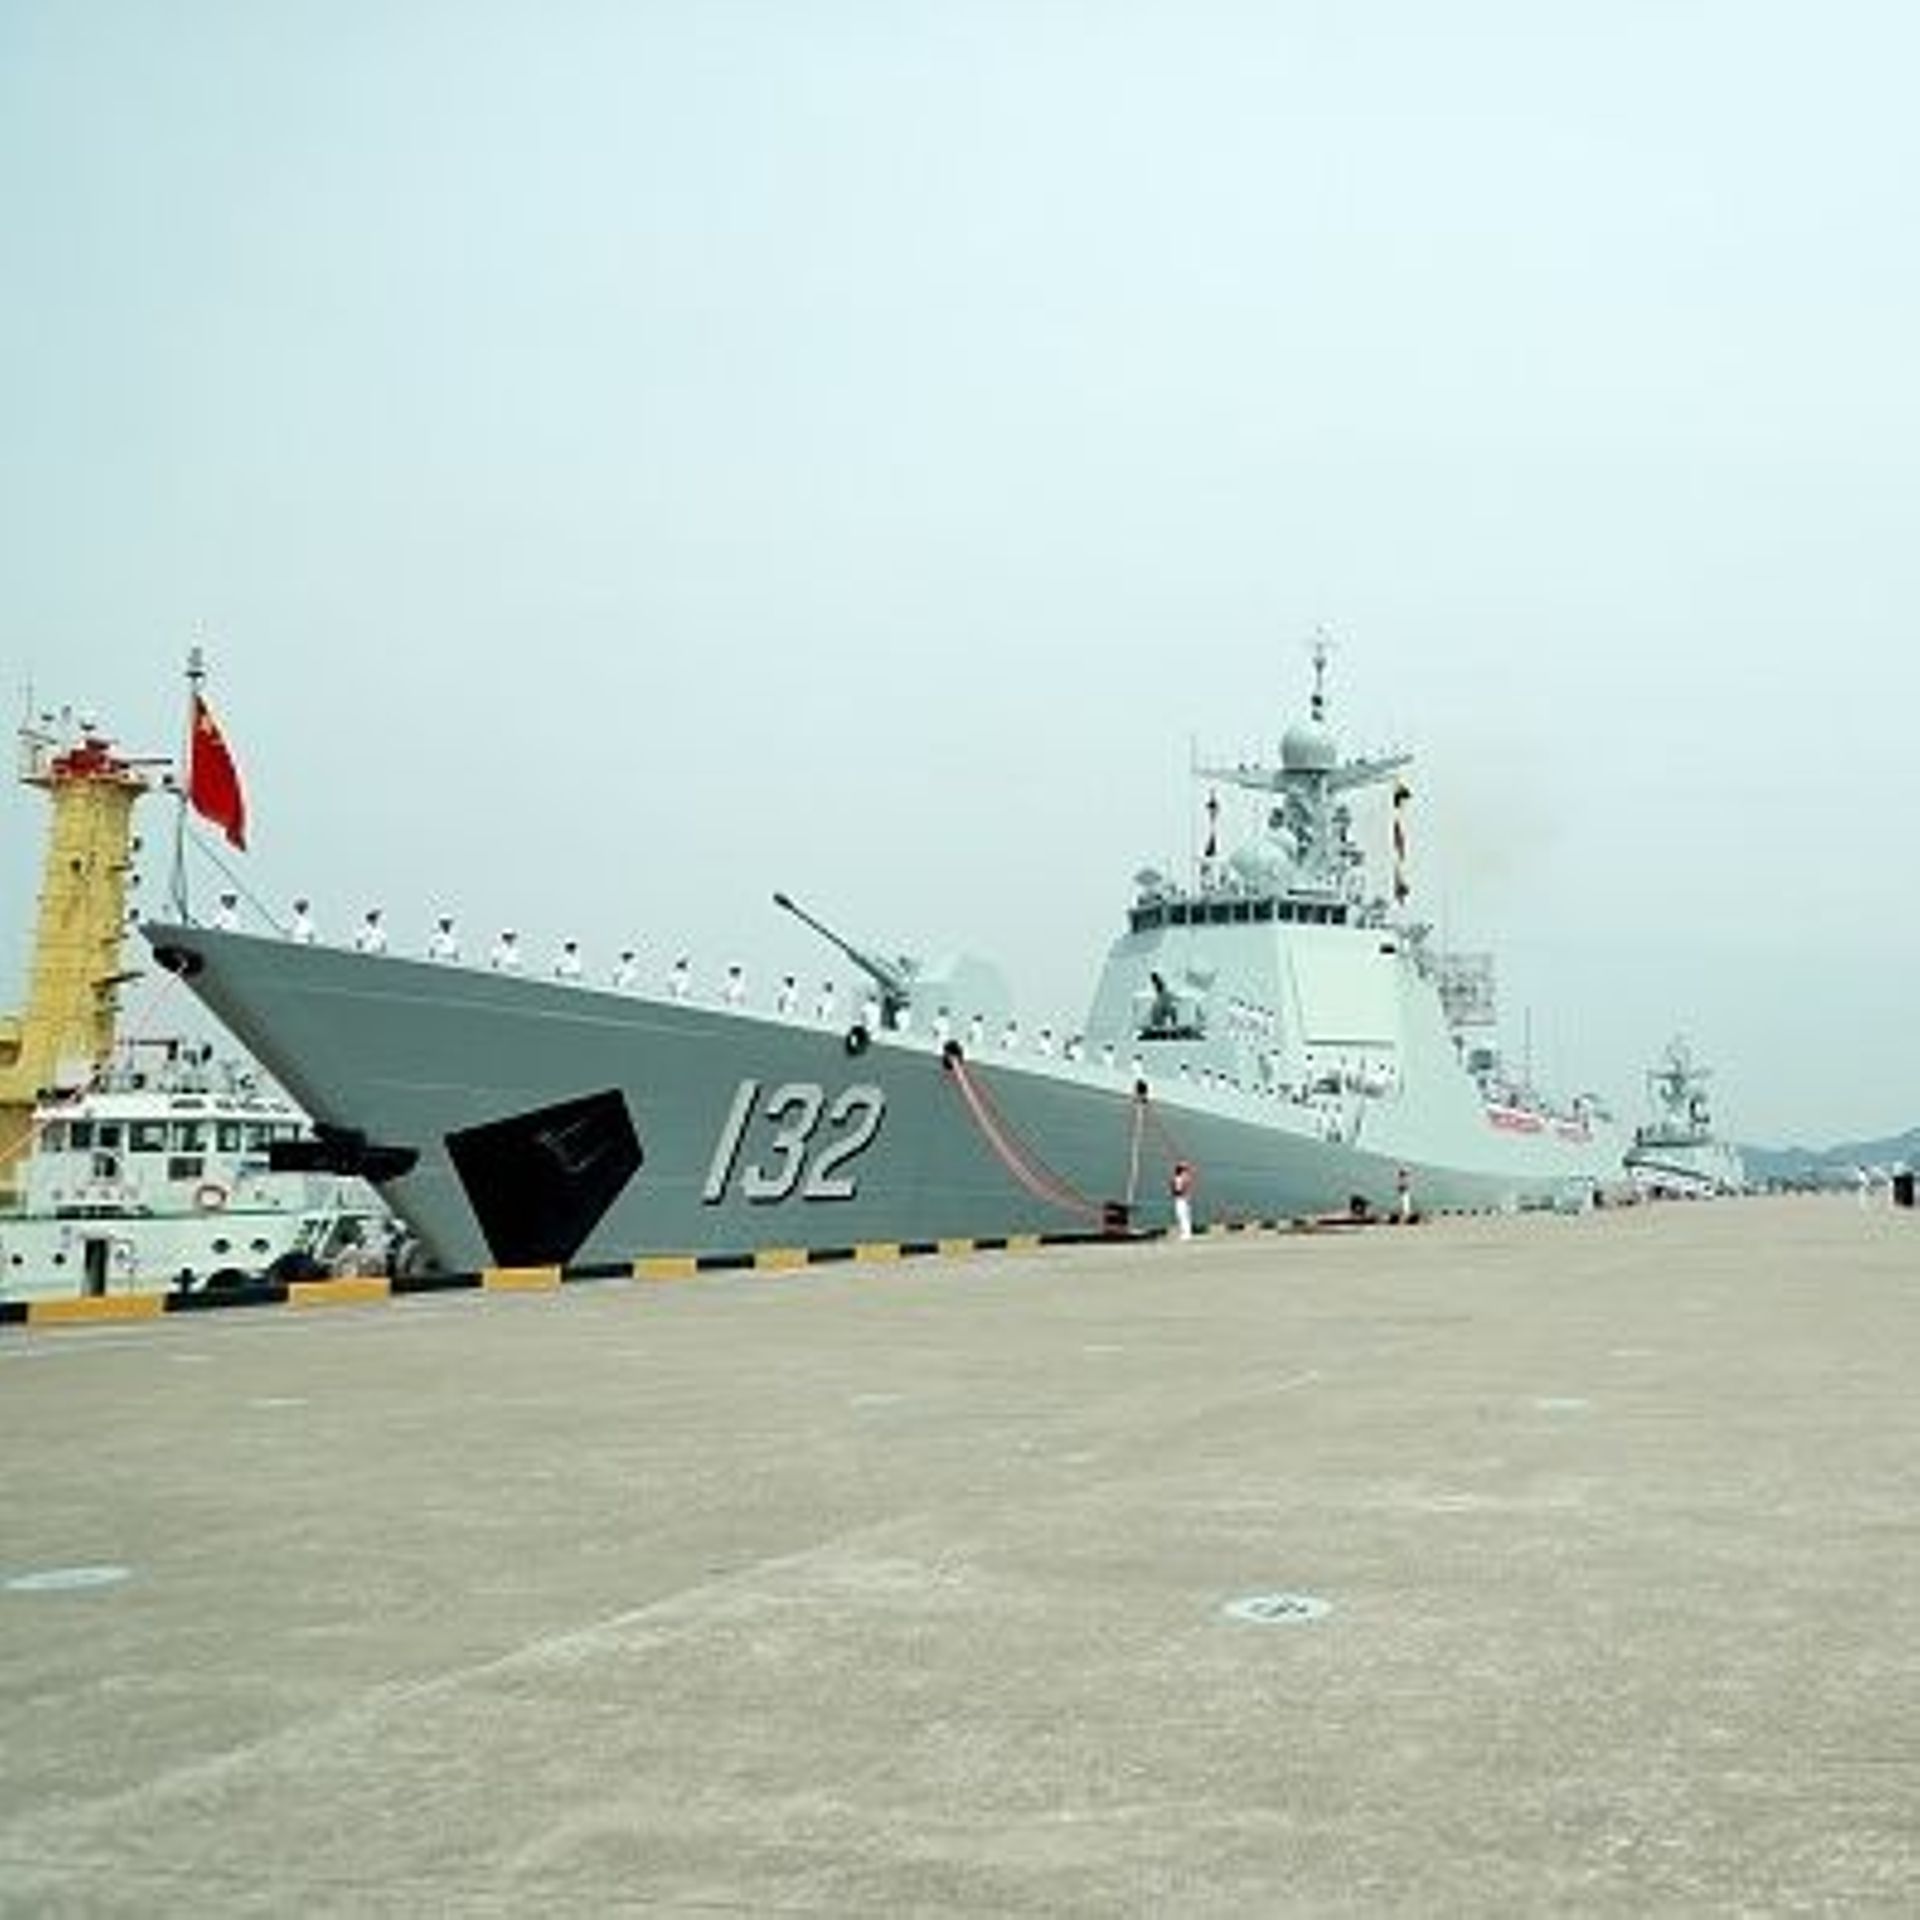 Image d'illustration : des membres de la marine chinoise se tiennent sur le pont du destroyer pour missiles guidés Suzhou (coque 132) de la force d'escorte dans un port militaire, le 18 mai 2022 à Zhoushan, dans la province chinoise du Zhejiang.